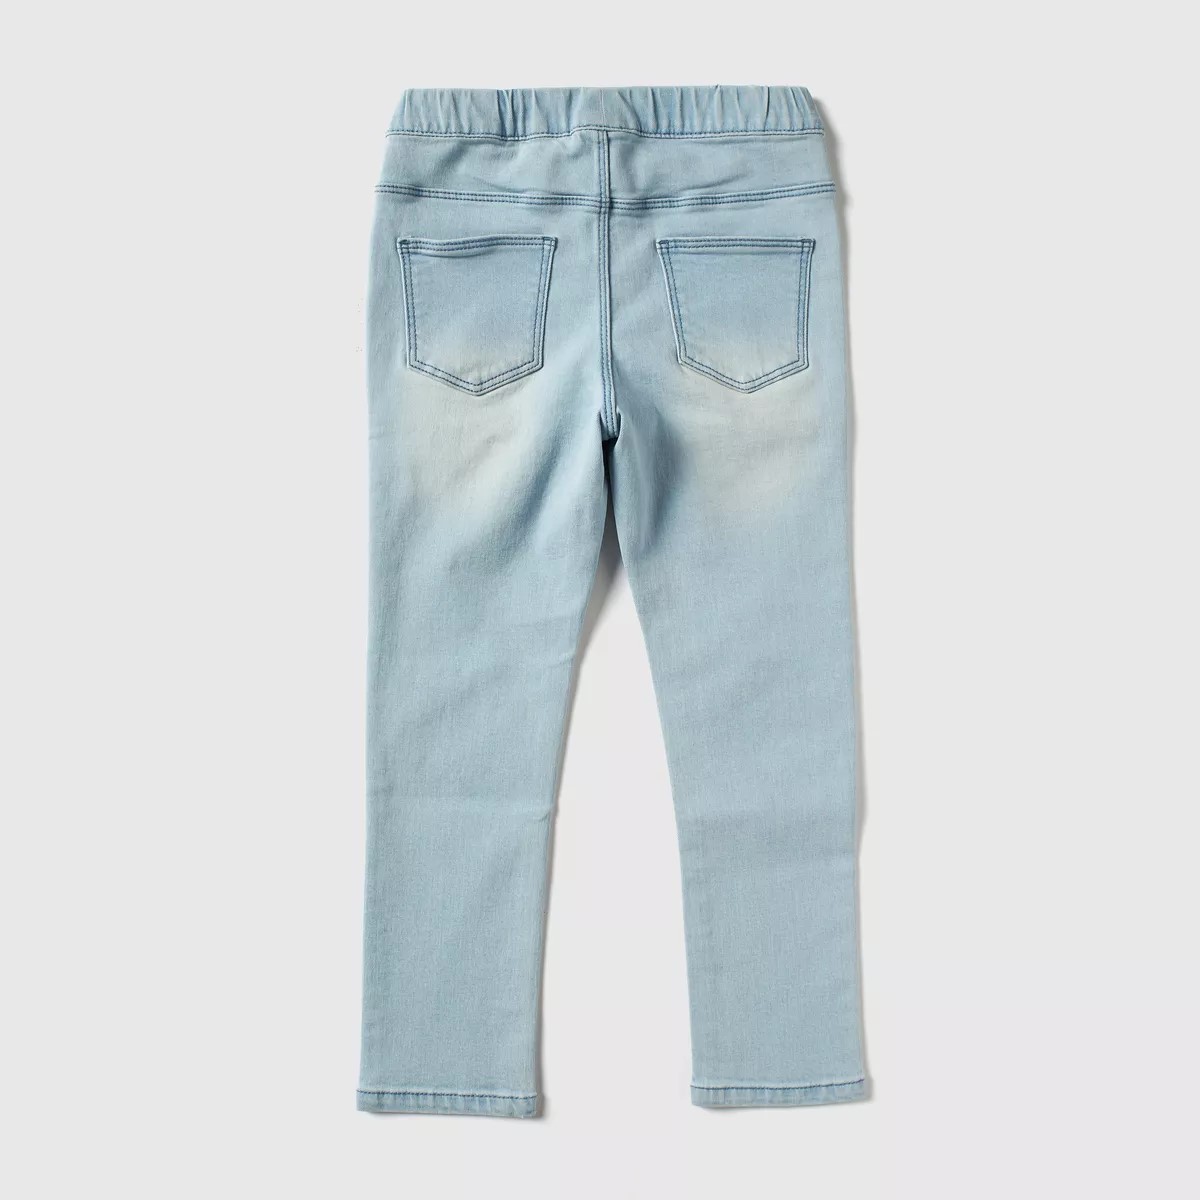 شلوار جینز دخترانه 37955 سایز 2 تا 8 سال مارک MAX